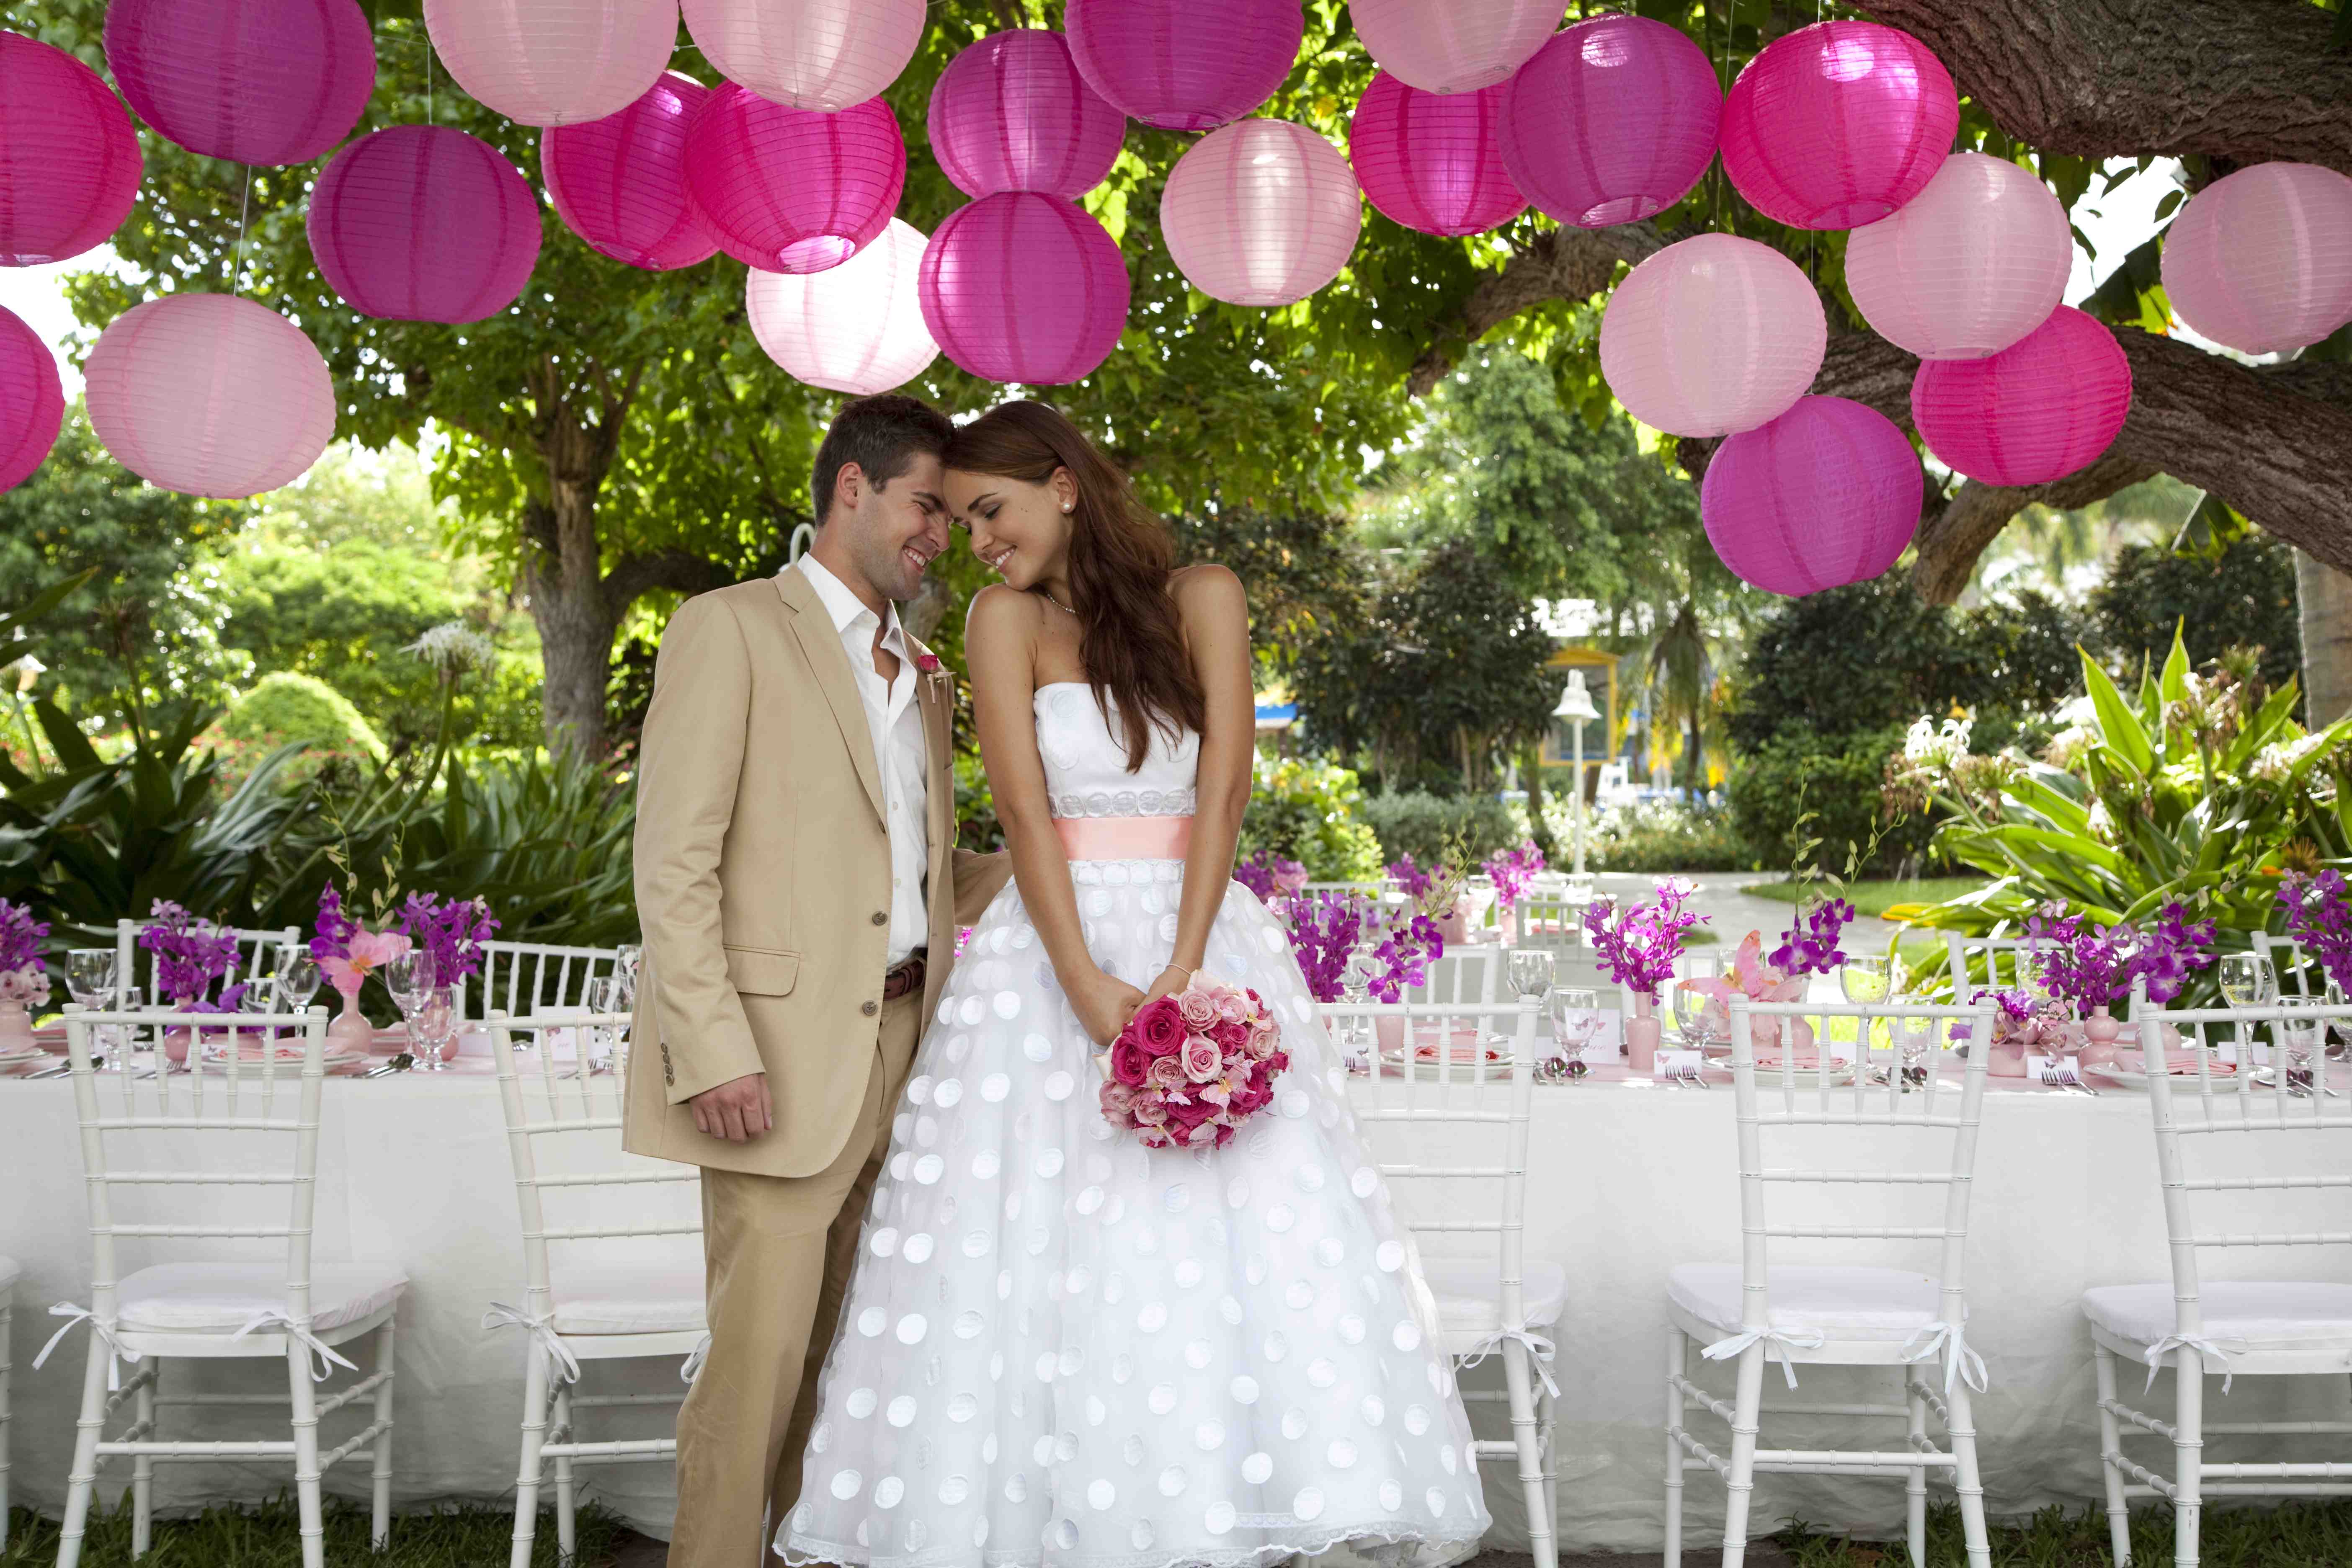 10 лет со свадьбы (розовая годовщина): как отпраздновать и что подарить